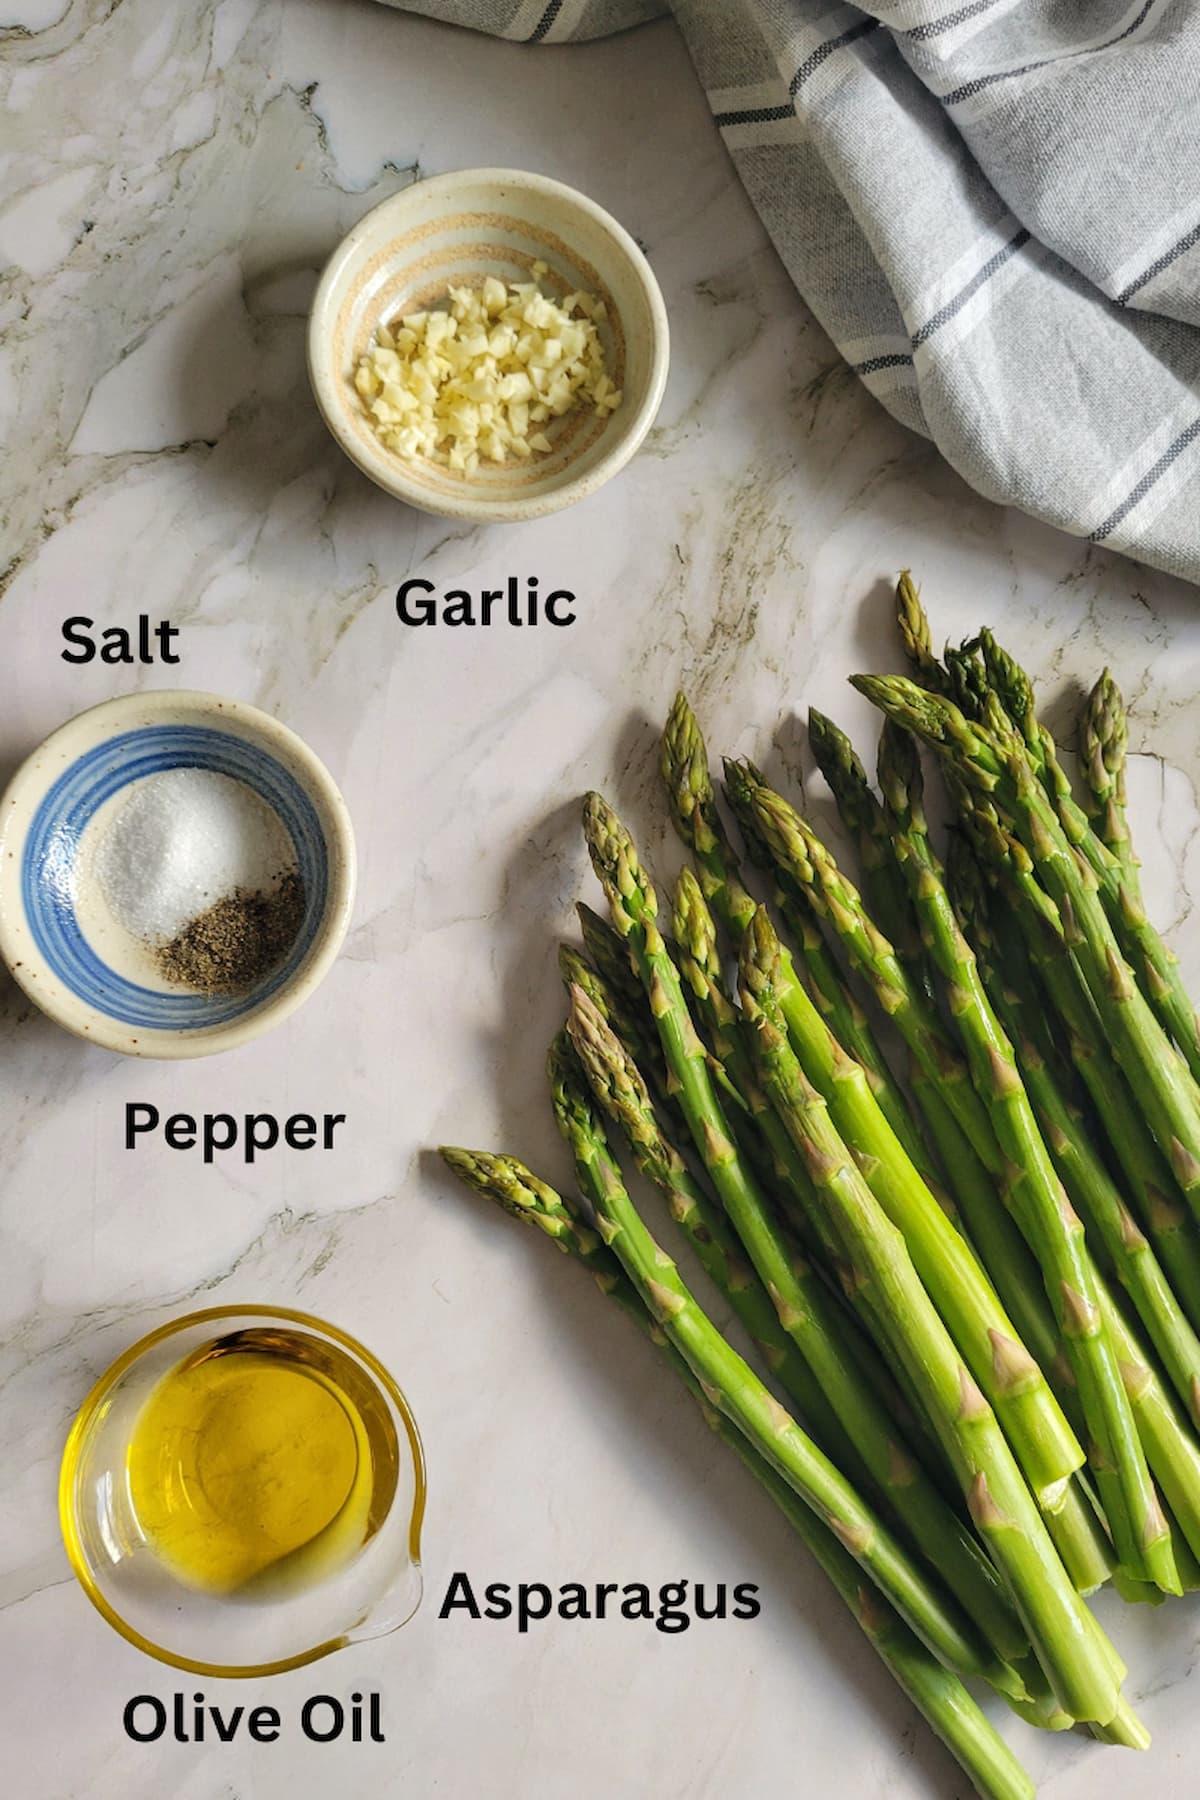 ingredients for roasted asparagus recipe - asparagus, olive oil, salt, pepper, garlic